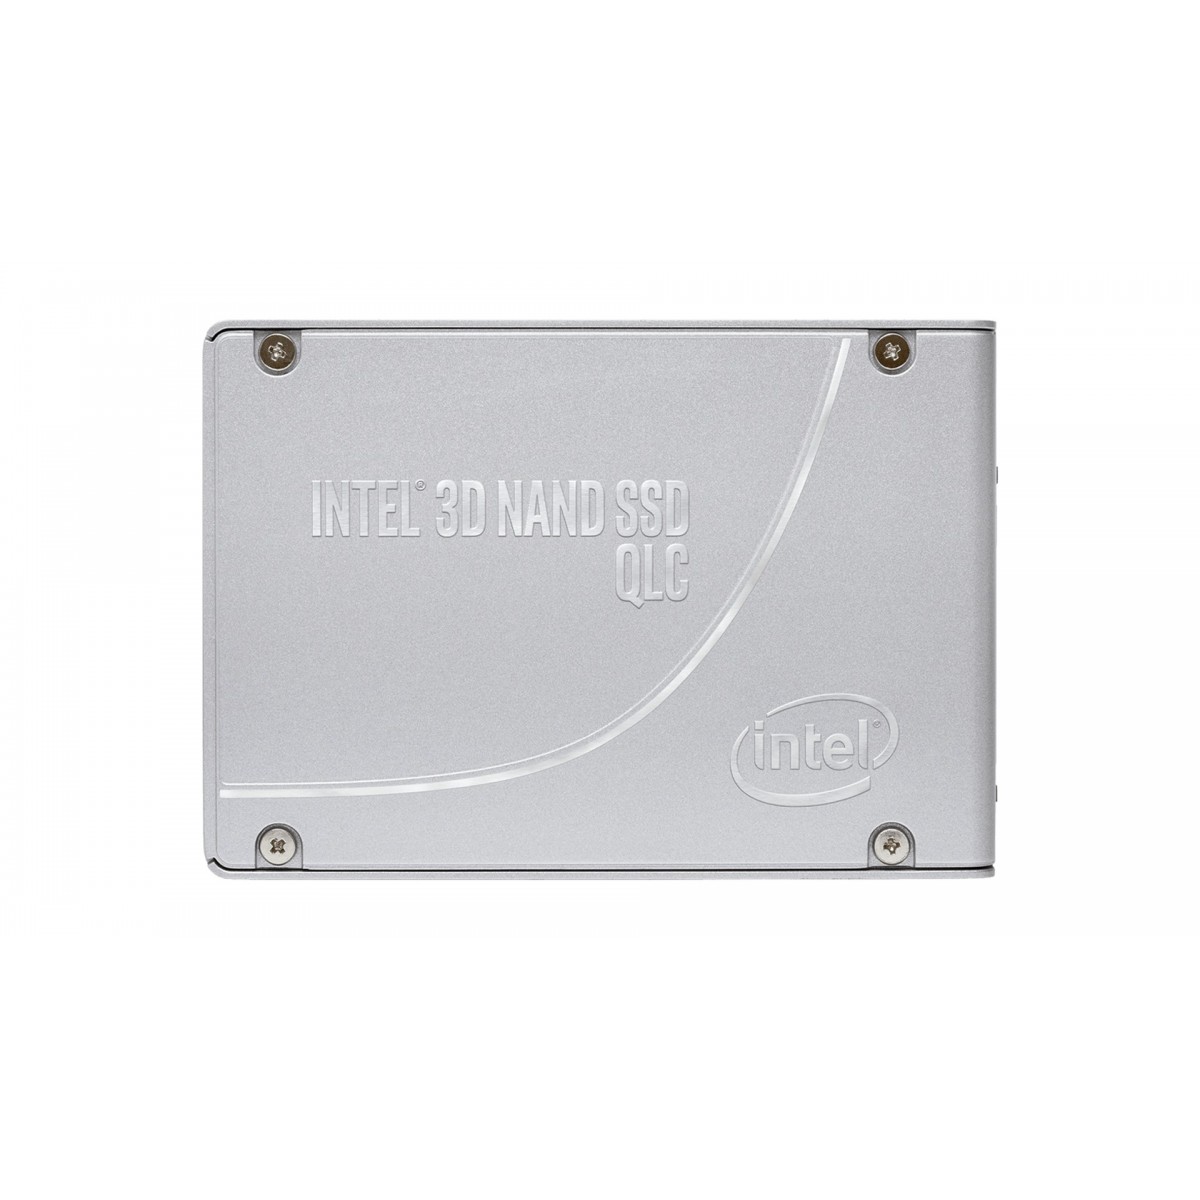 Intel D5 P4326 - 15360 GB - U.2